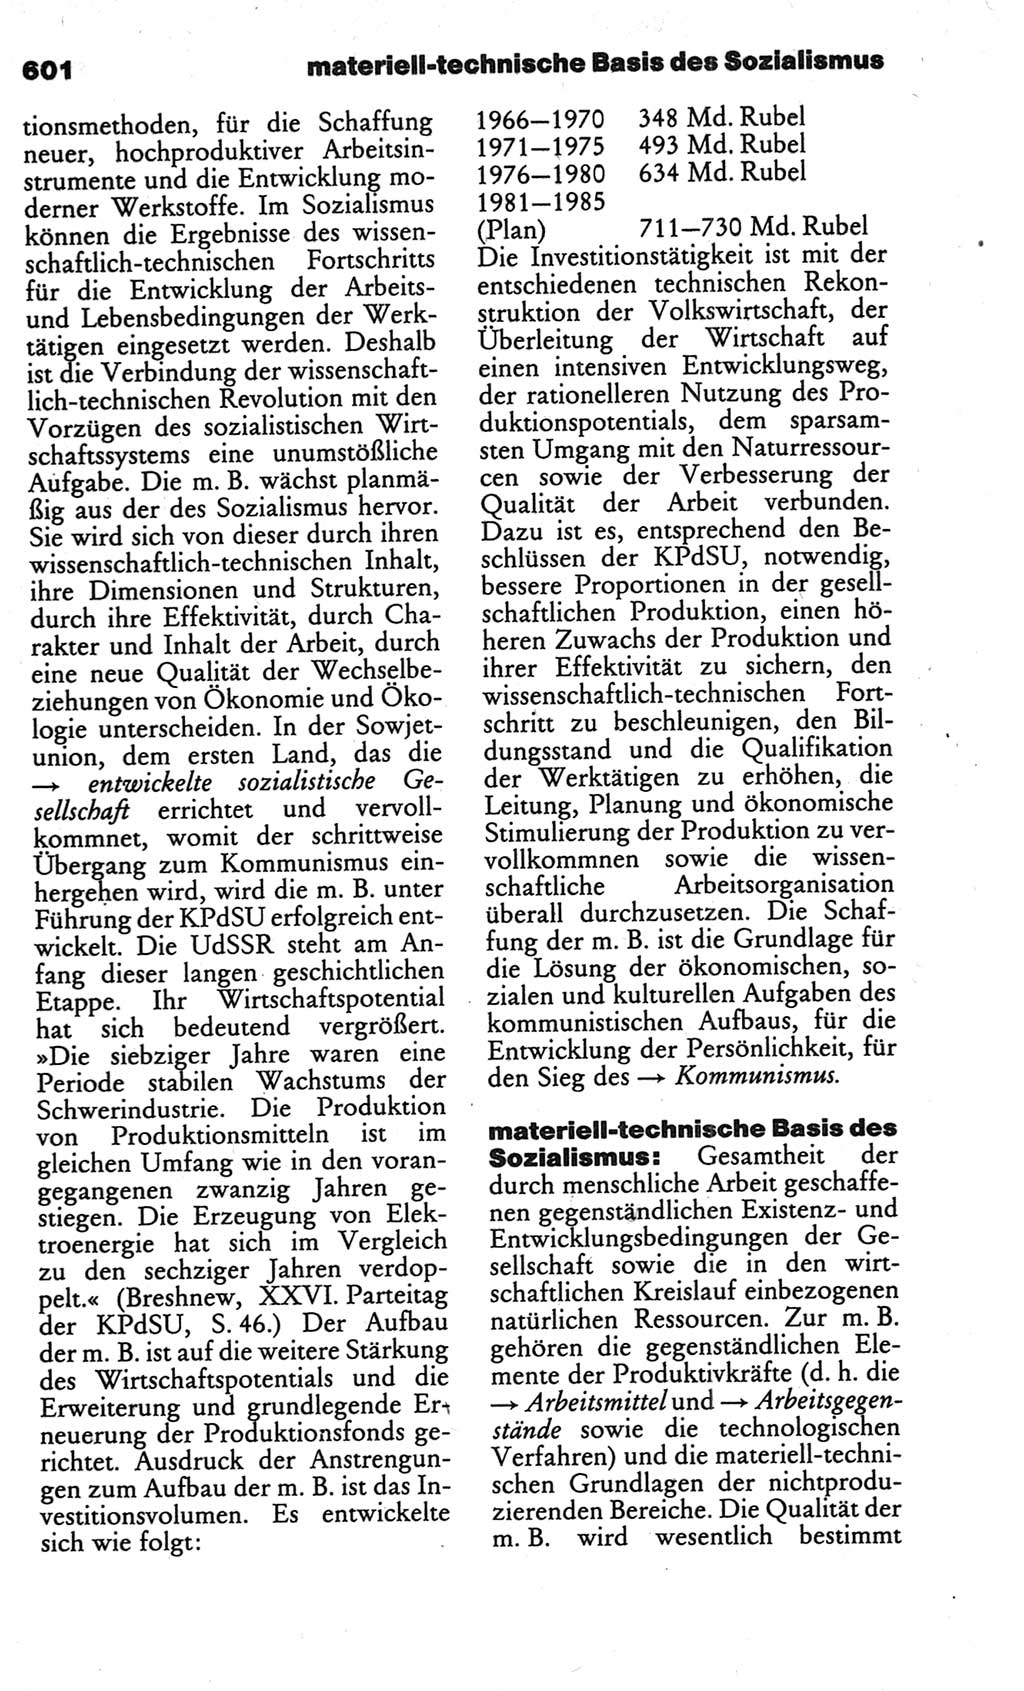 Kleines politisches Wörterbuch [Deutsche Demokratische Republik (DDR)] 1986, Seite 601 (Kl. pol. Wb. DDR 1986, S. 601)